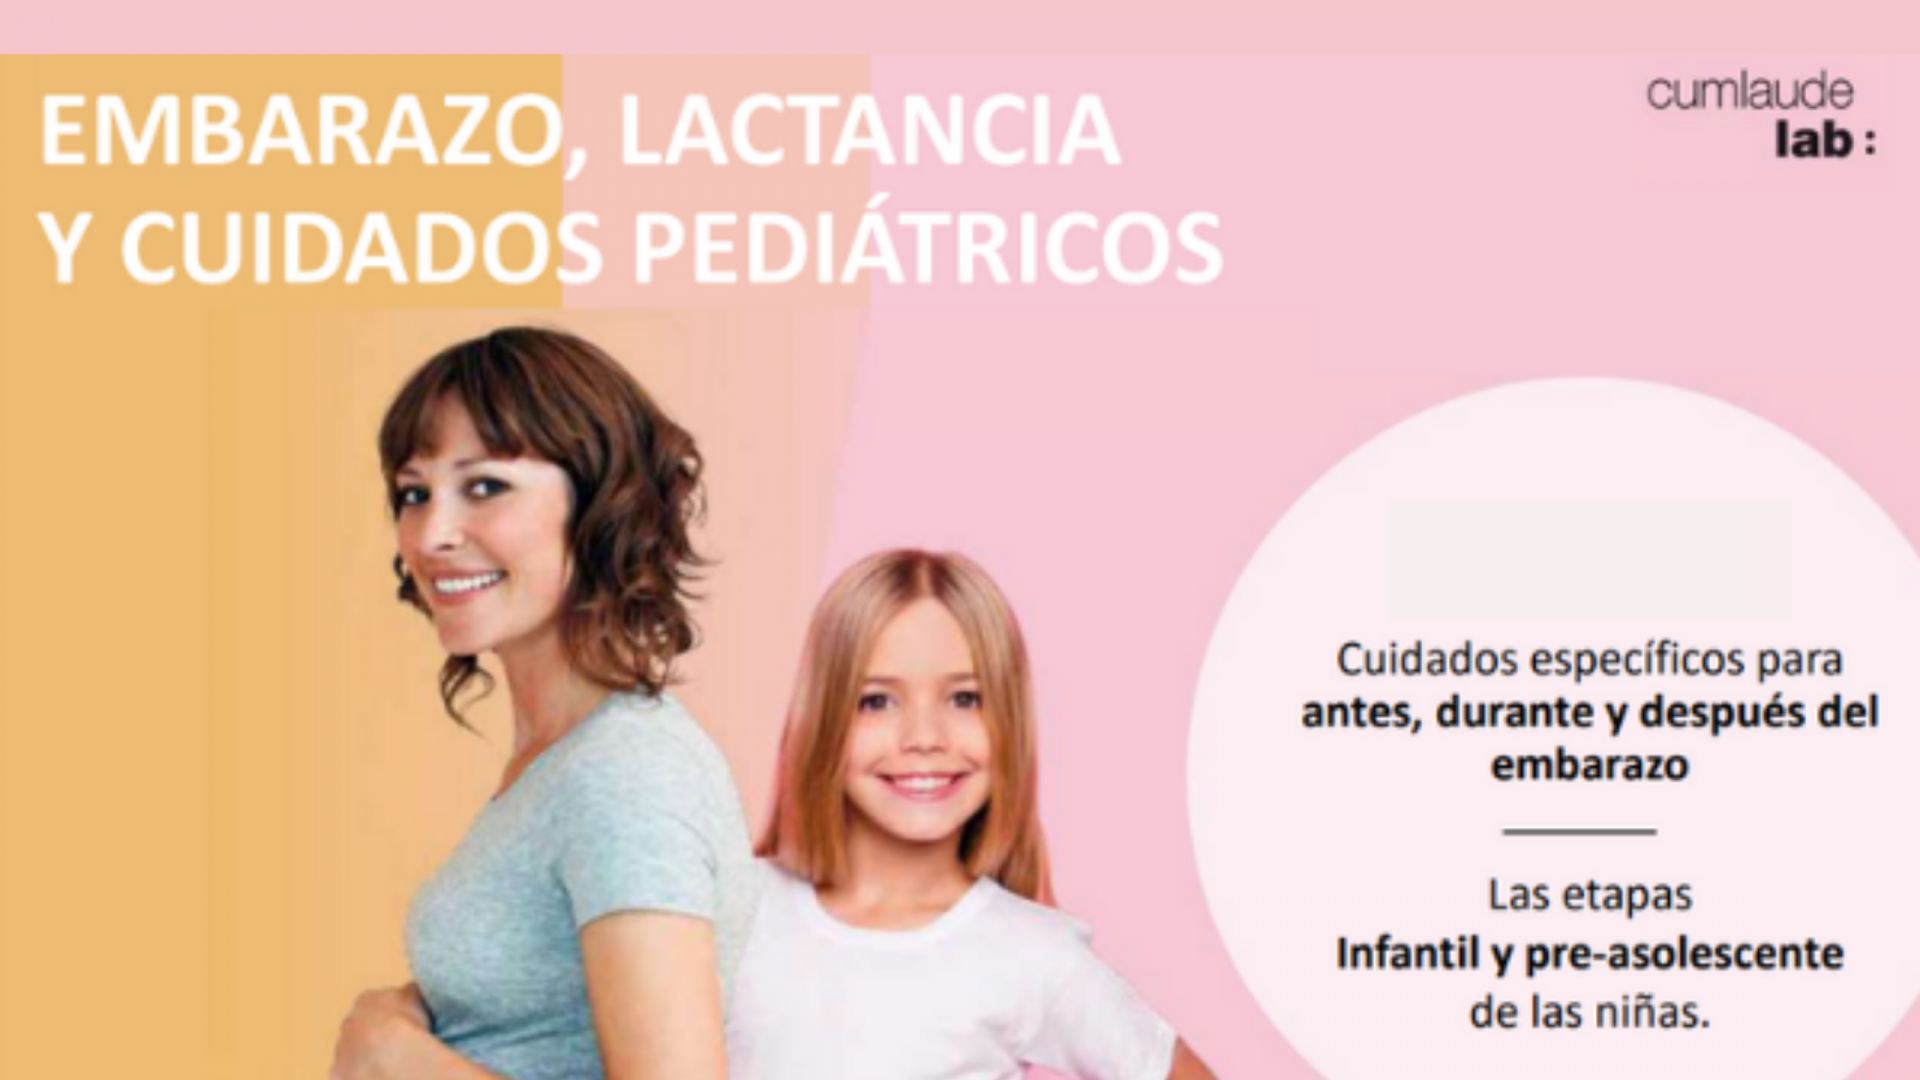 Salud íntima en Embarazo, Post-parto, Lactancia, Etapa Infantil y Pre-Adolescencia